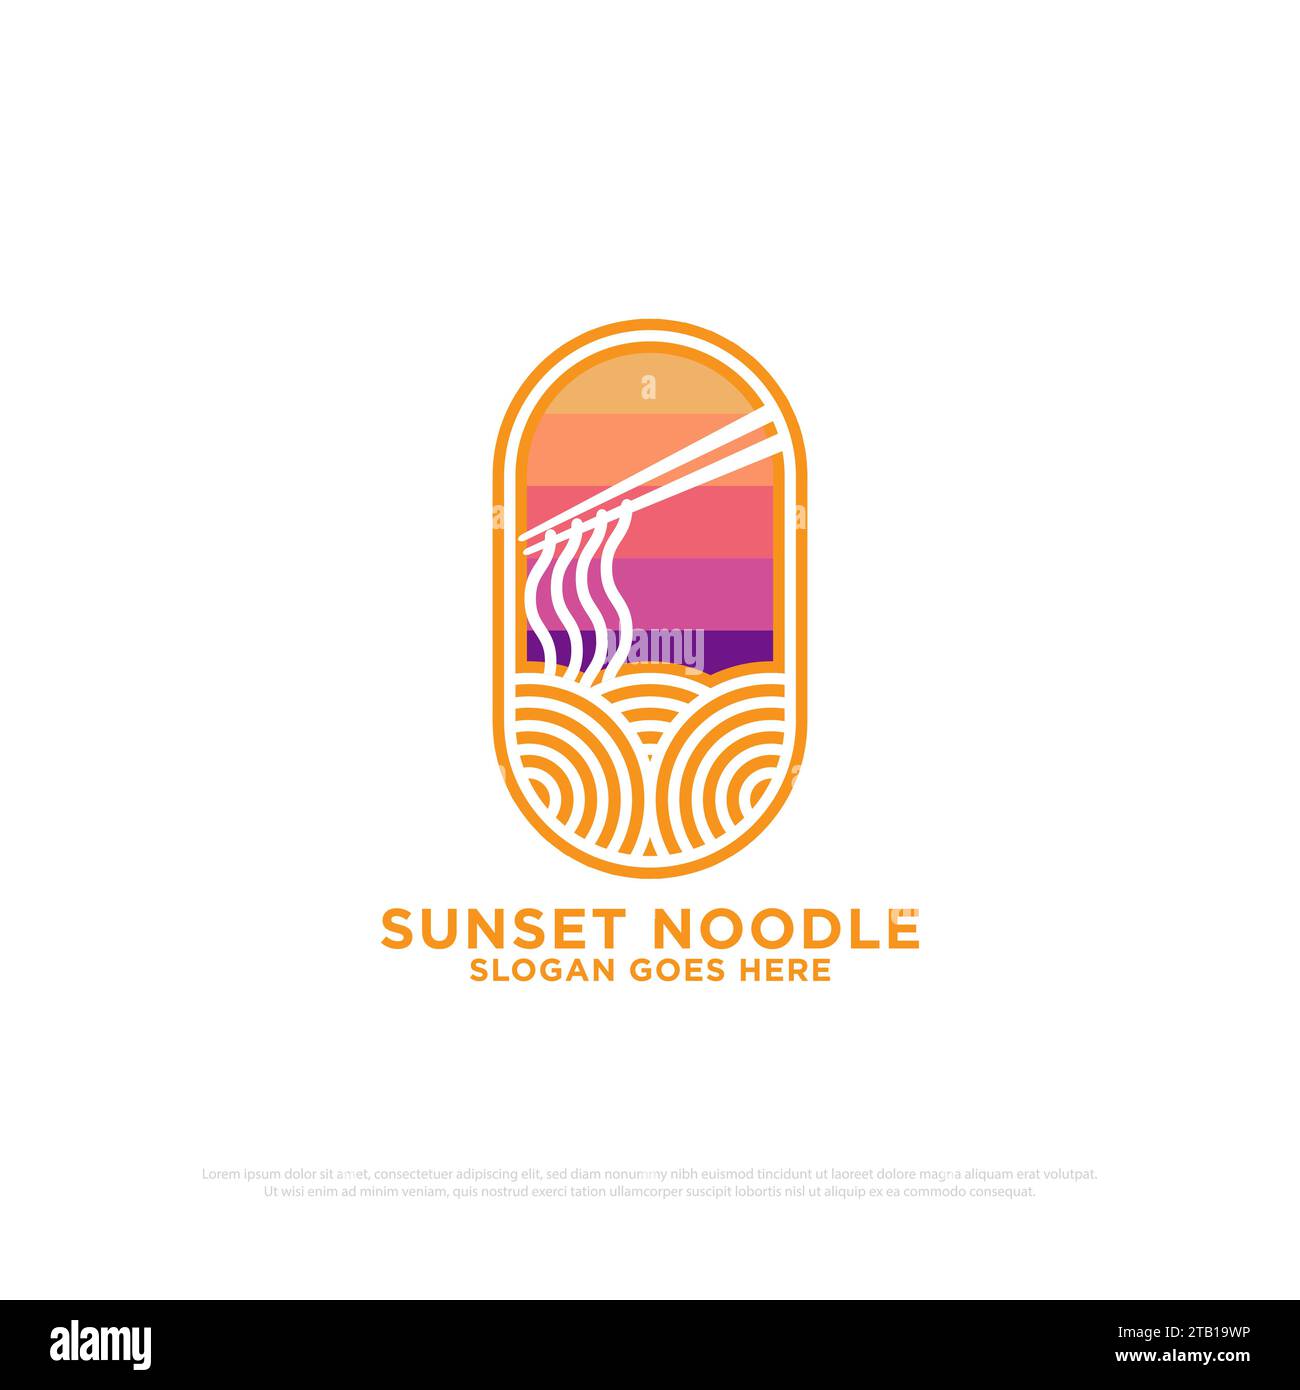 sunset noodle logo design vector, outline food and beverages vector illustration, nature outdoor cafe shop modern logo template Stock Vector